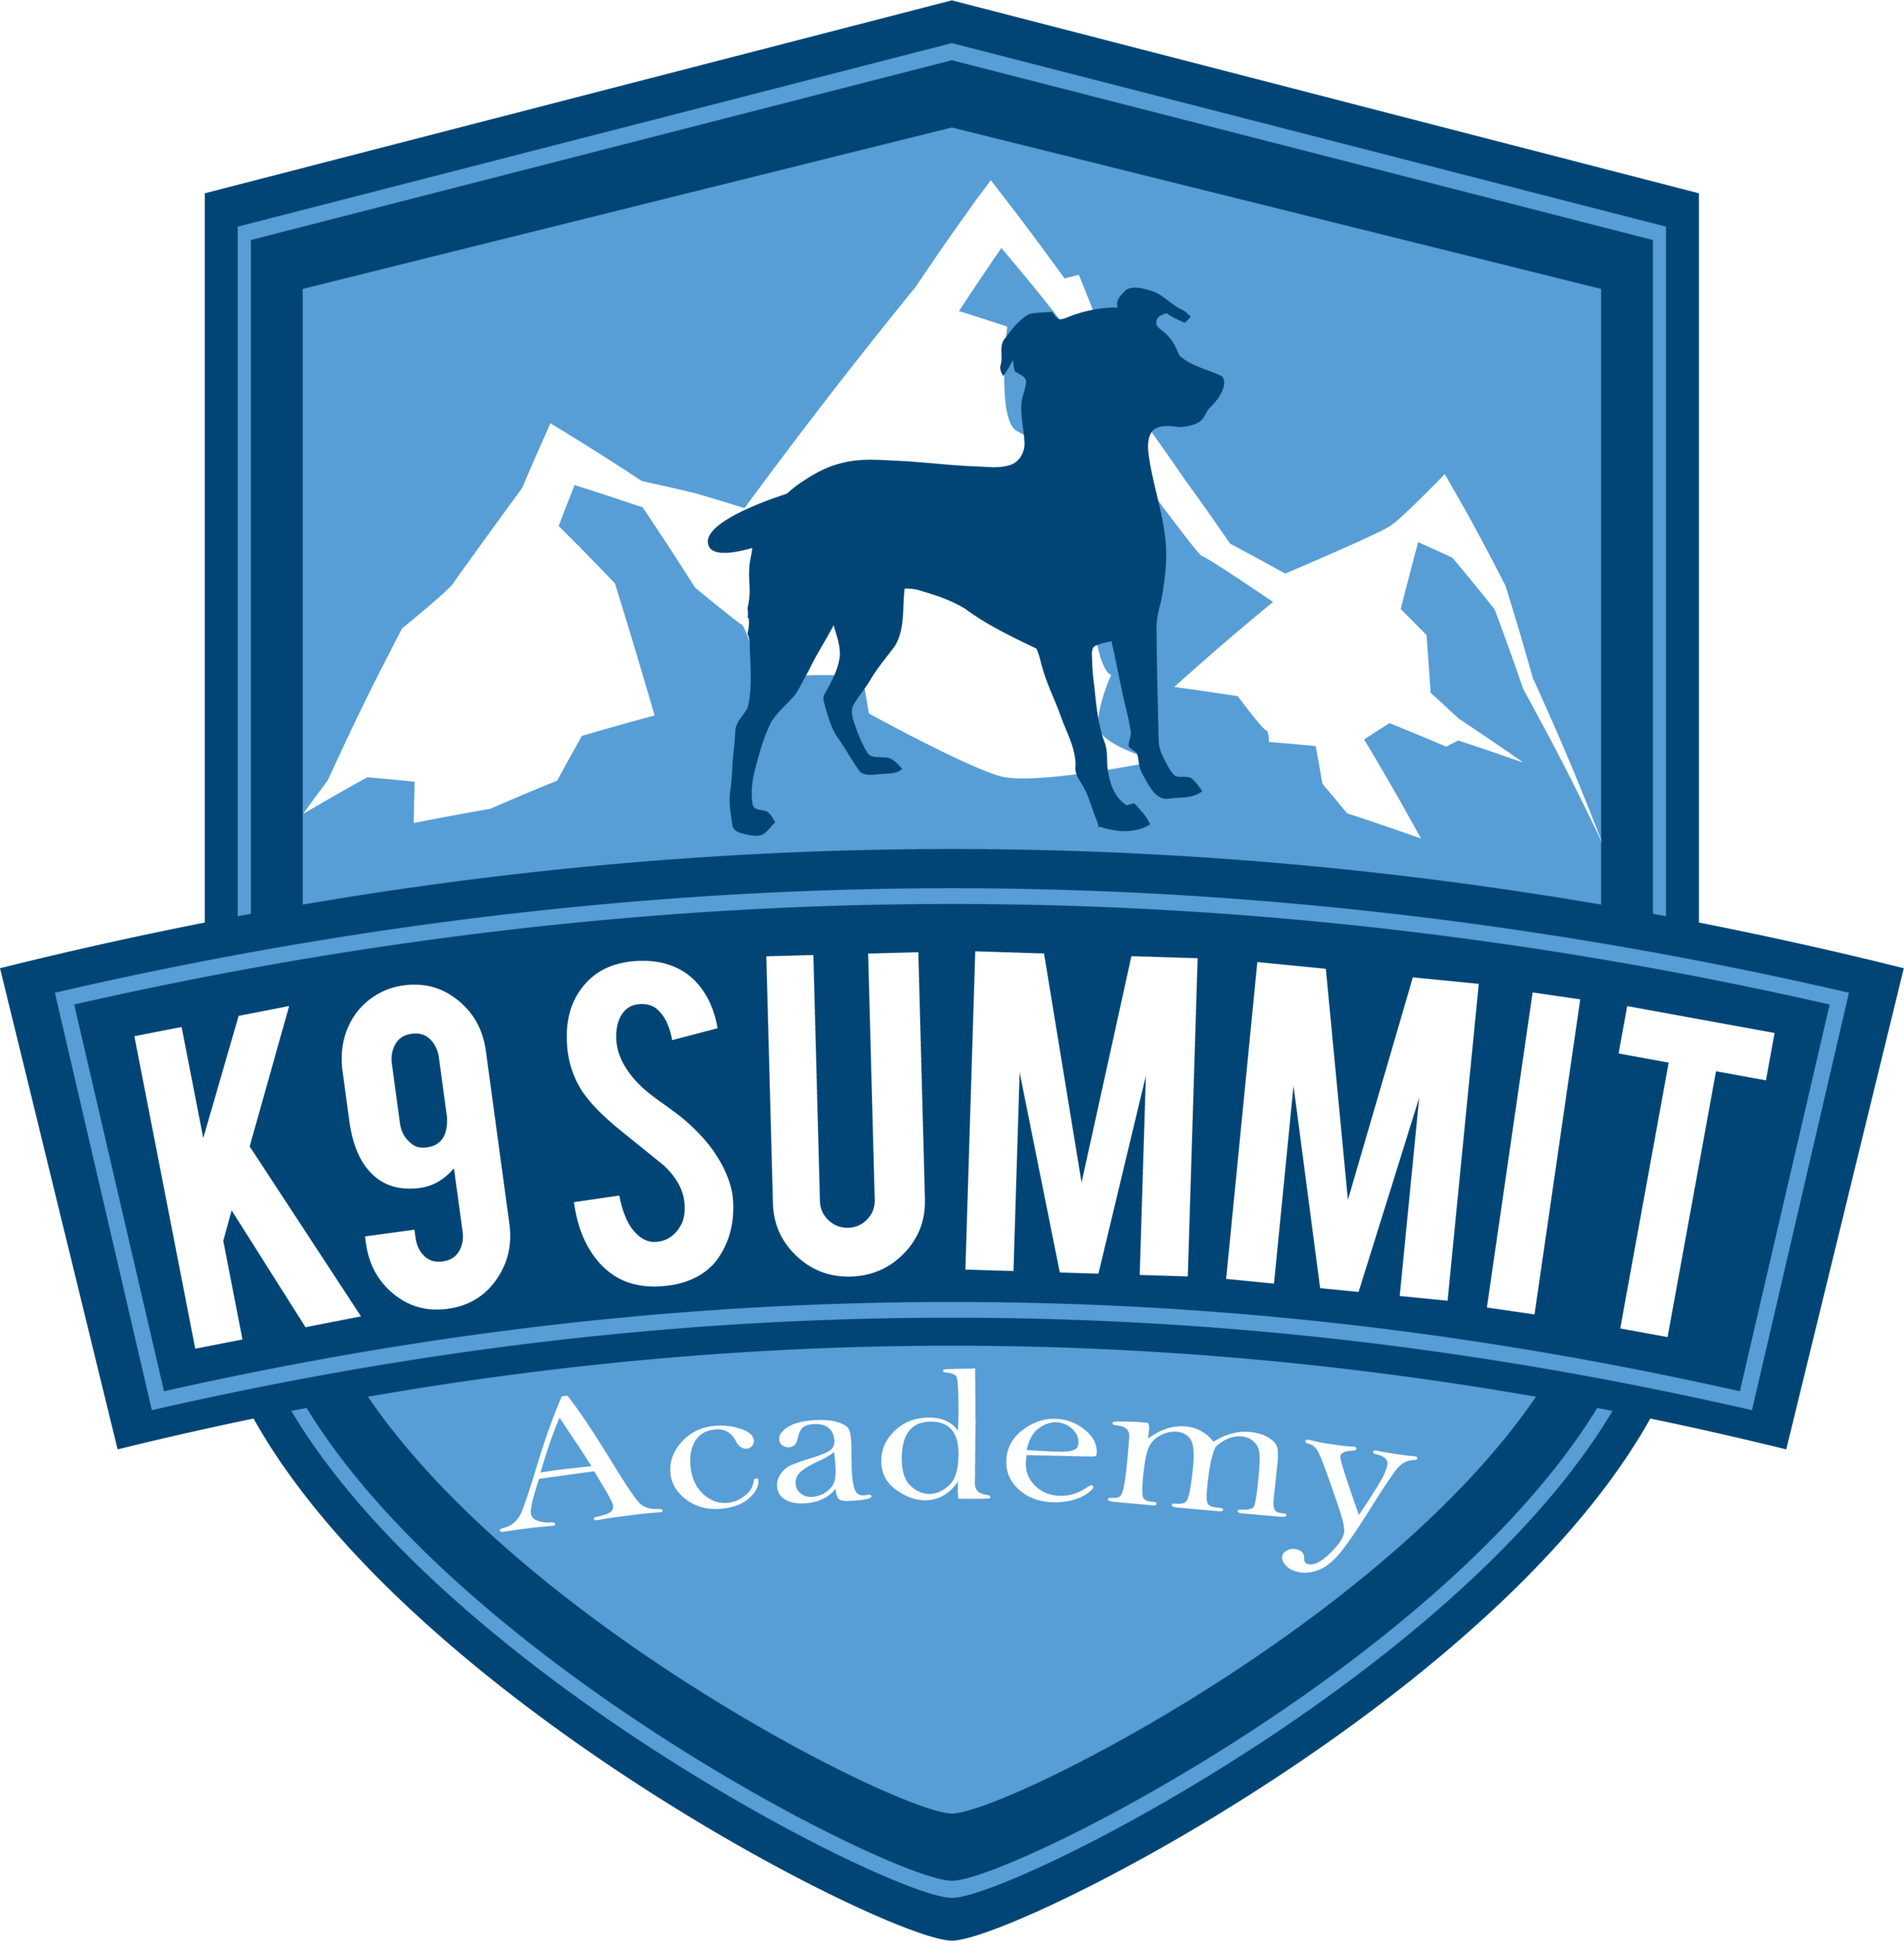 K9 Summit Academy 